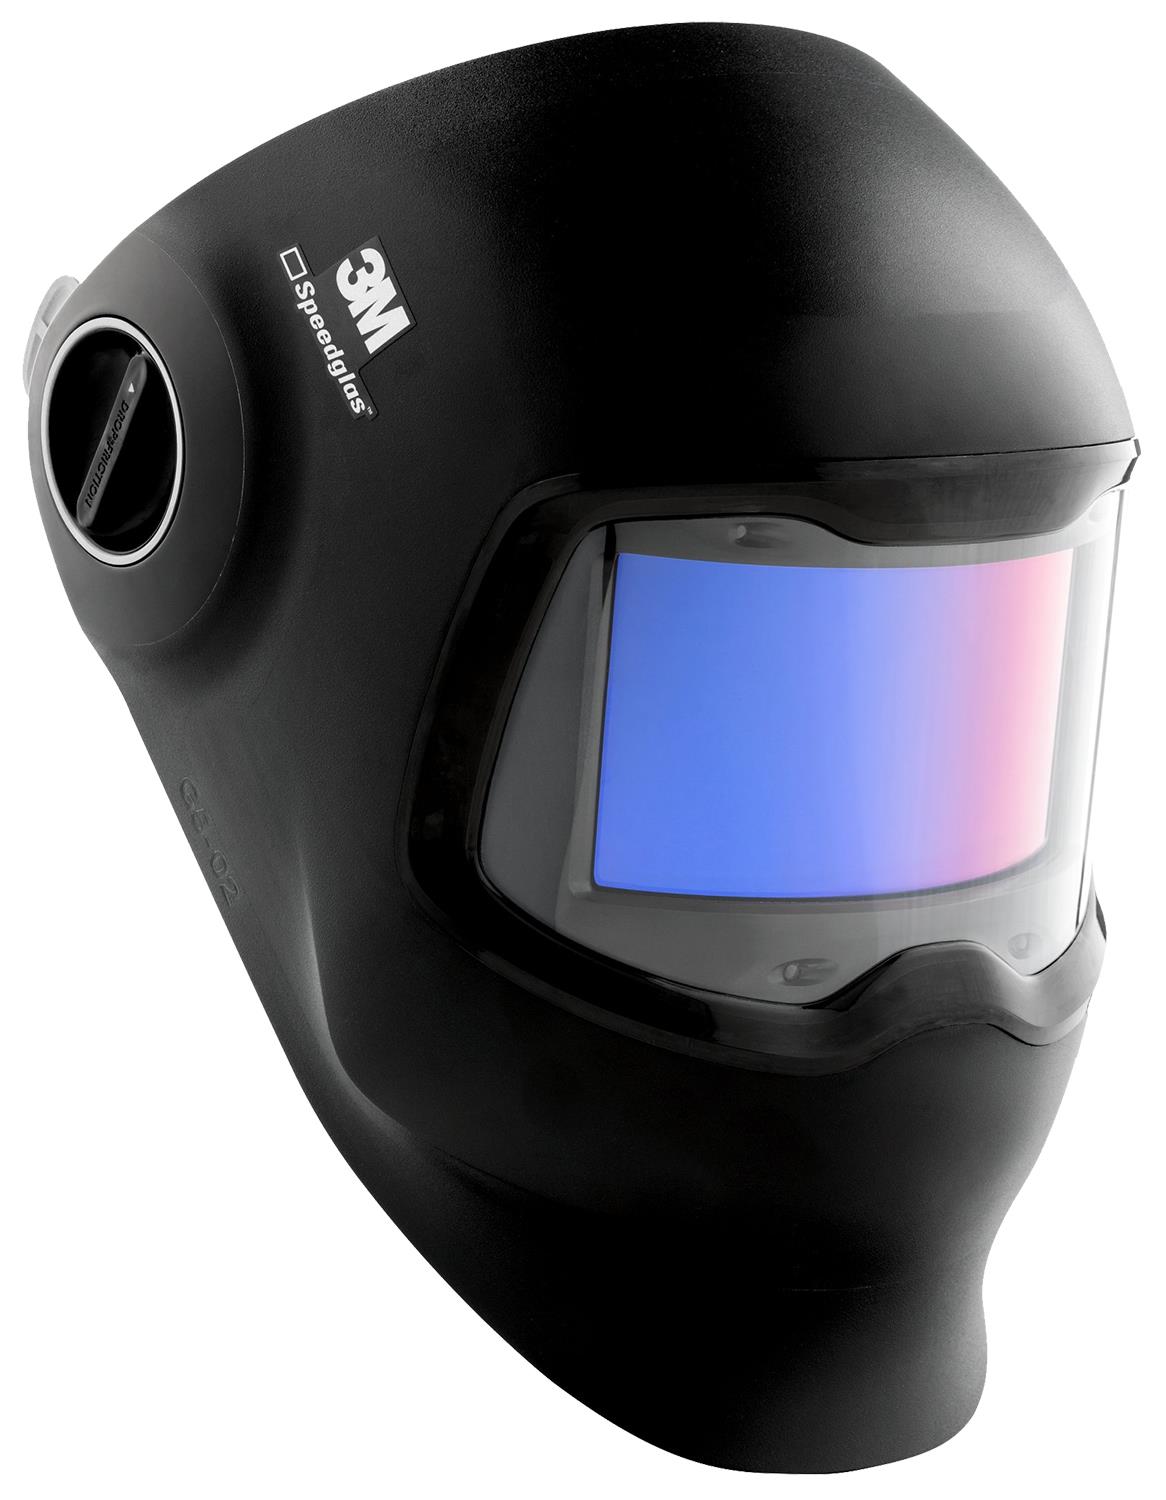 3M-621120  3M Speedglas G5-02 Welding Helmet with Curved Auto Darkening Filter Lens, Variable Shades 8-12